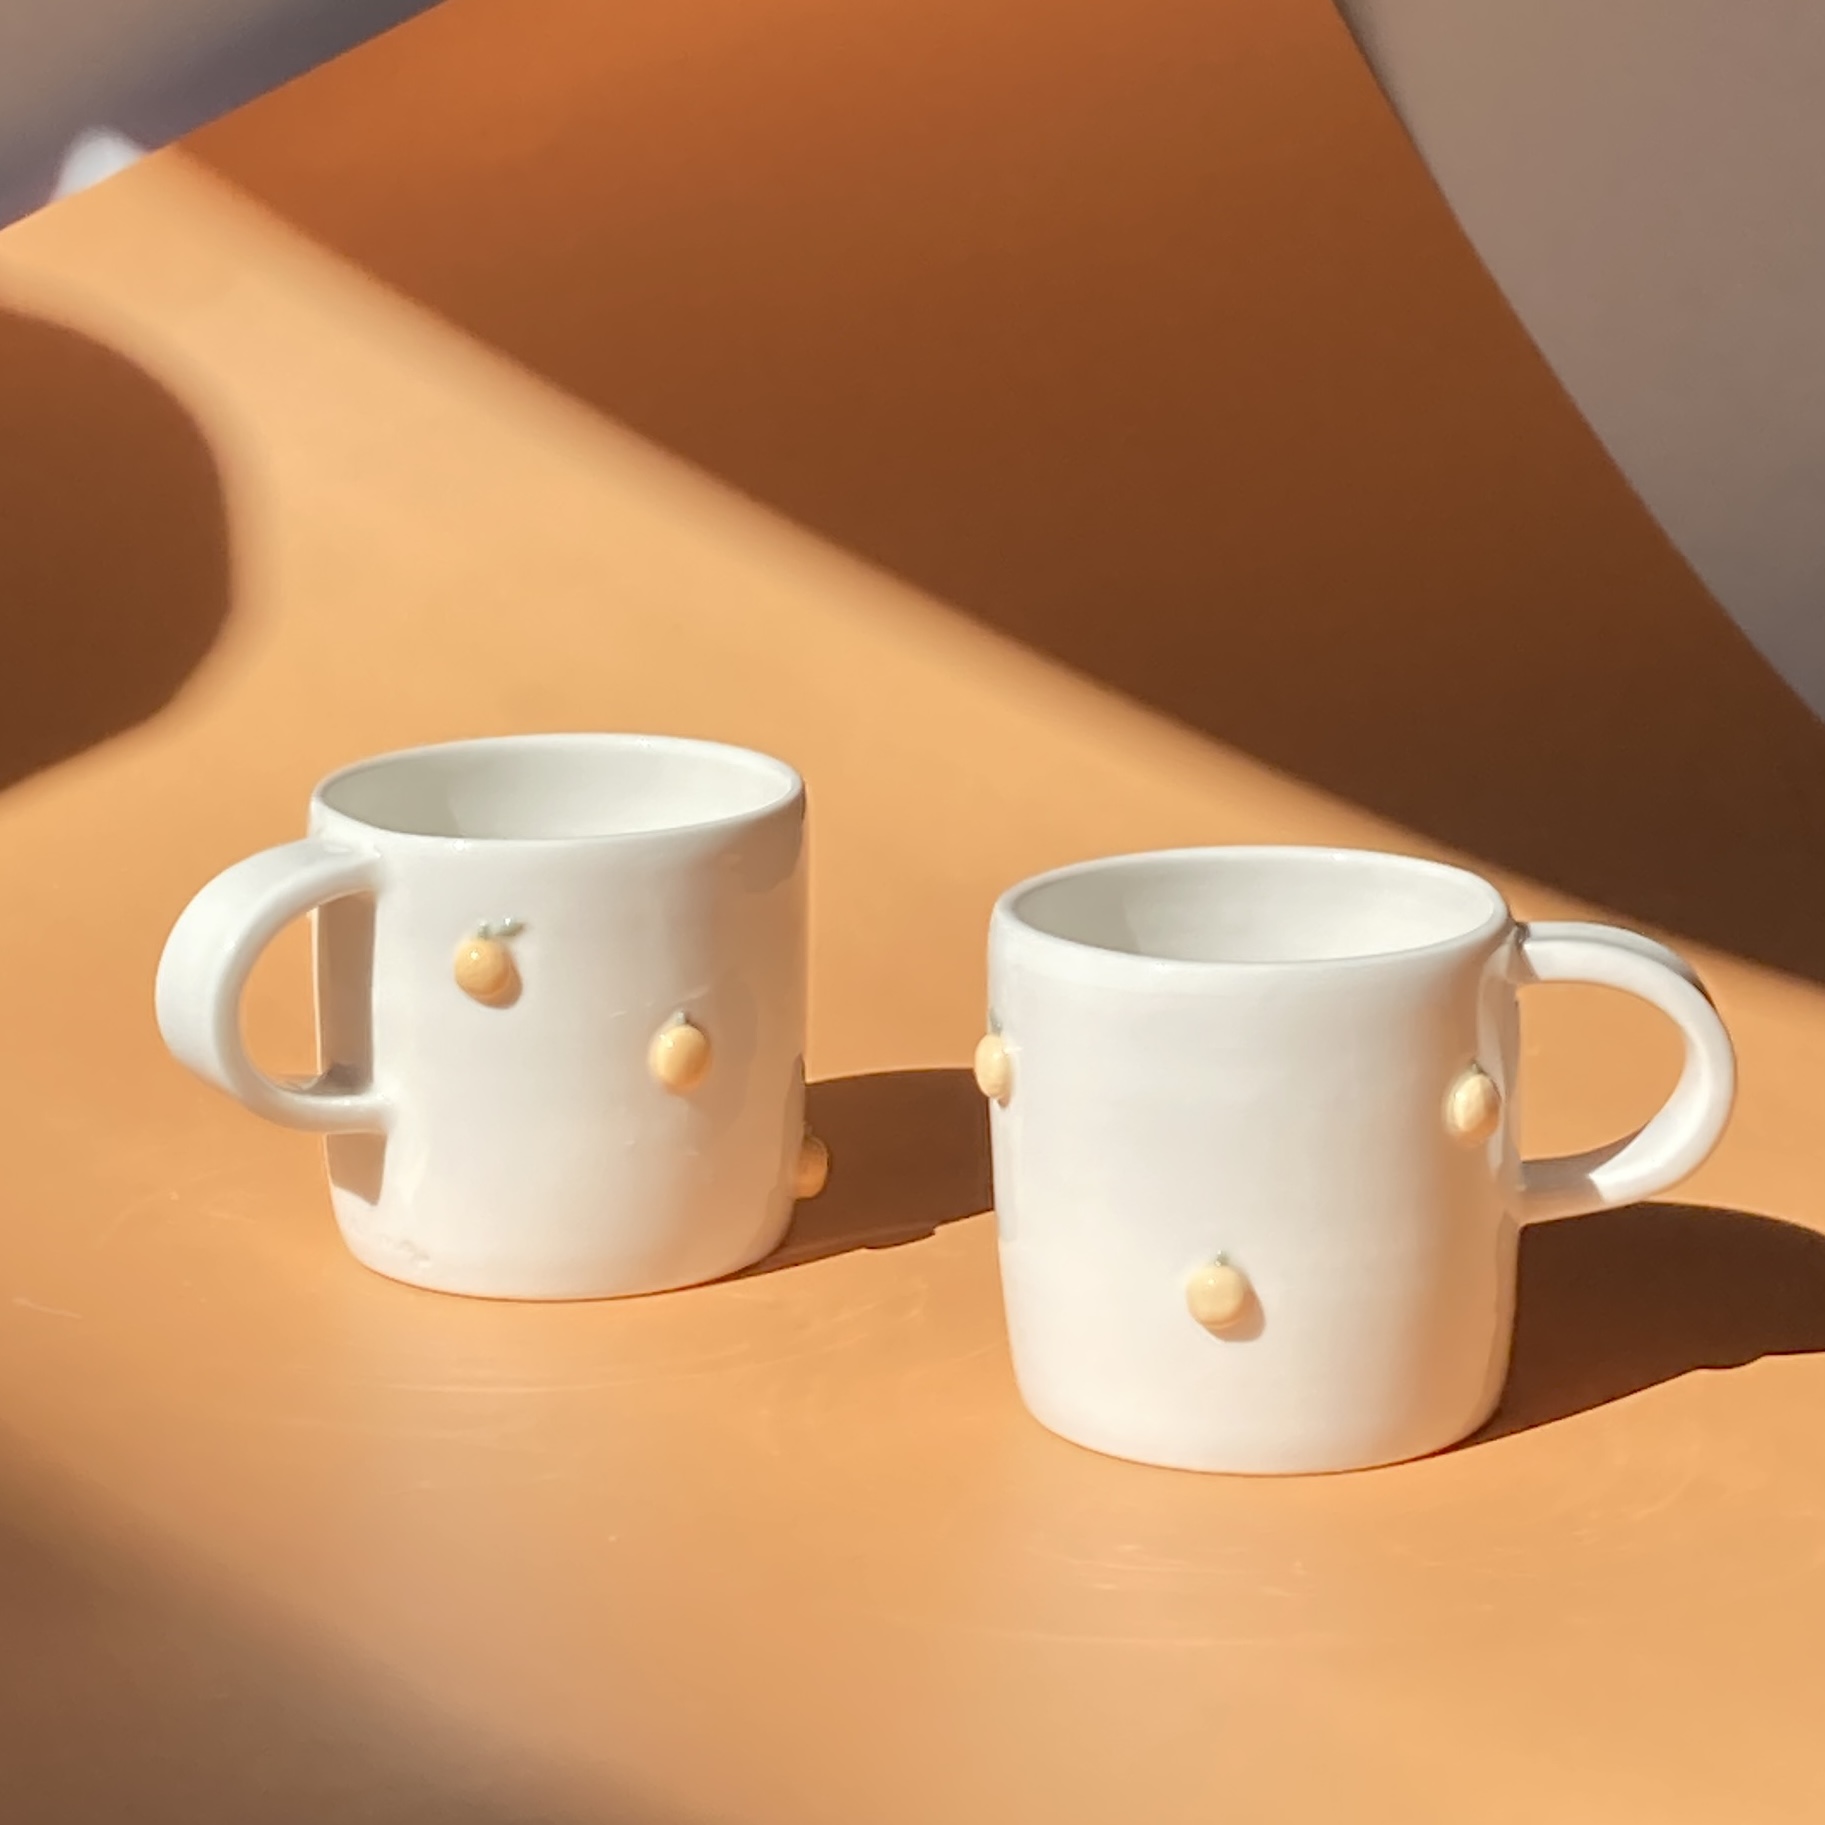 Tangerine mug